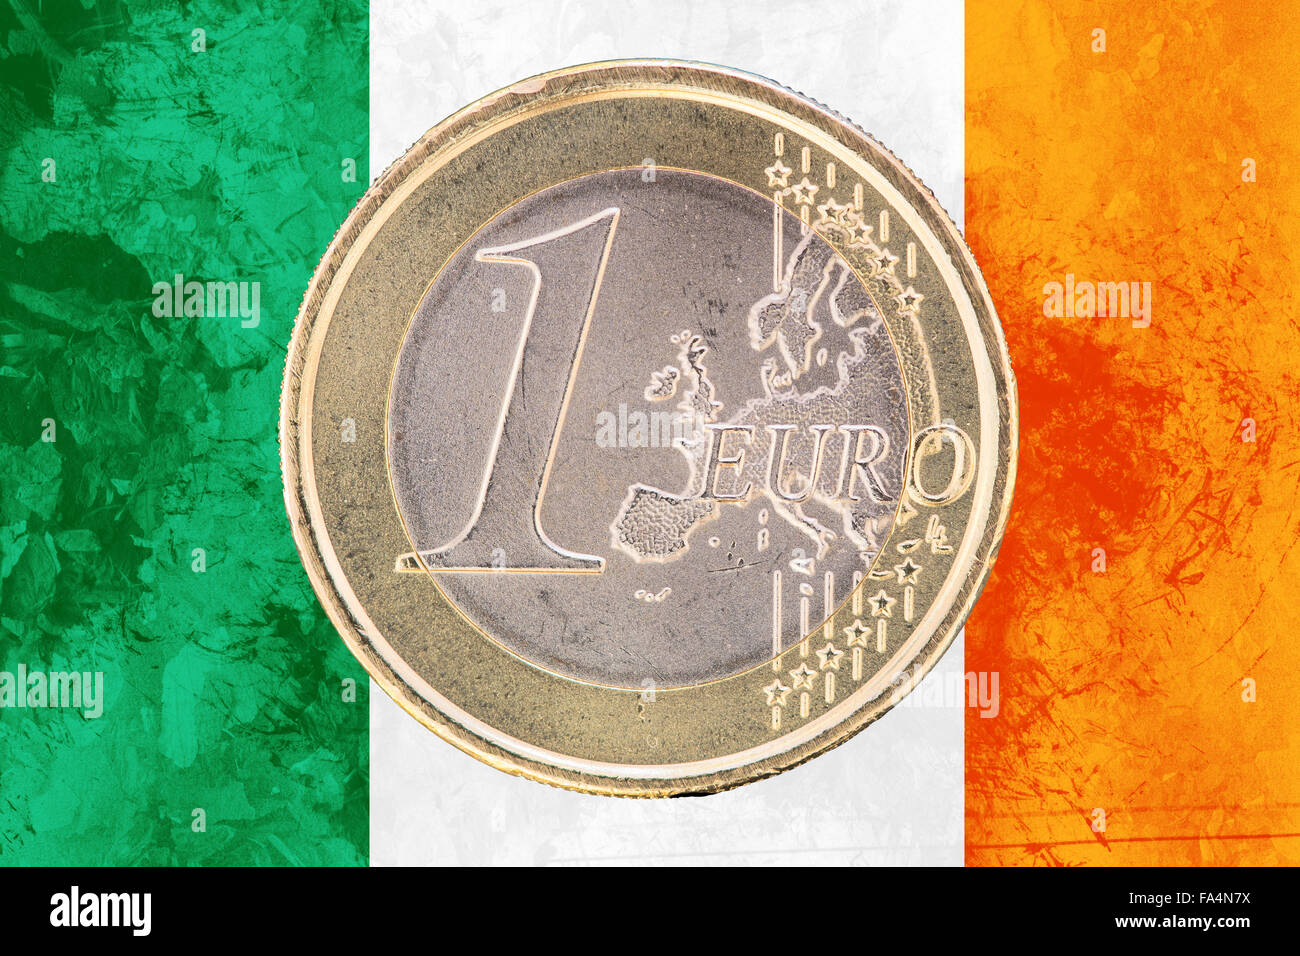 1 € münze europäische union irland über blau - Lizenzfreies Foto #20062468